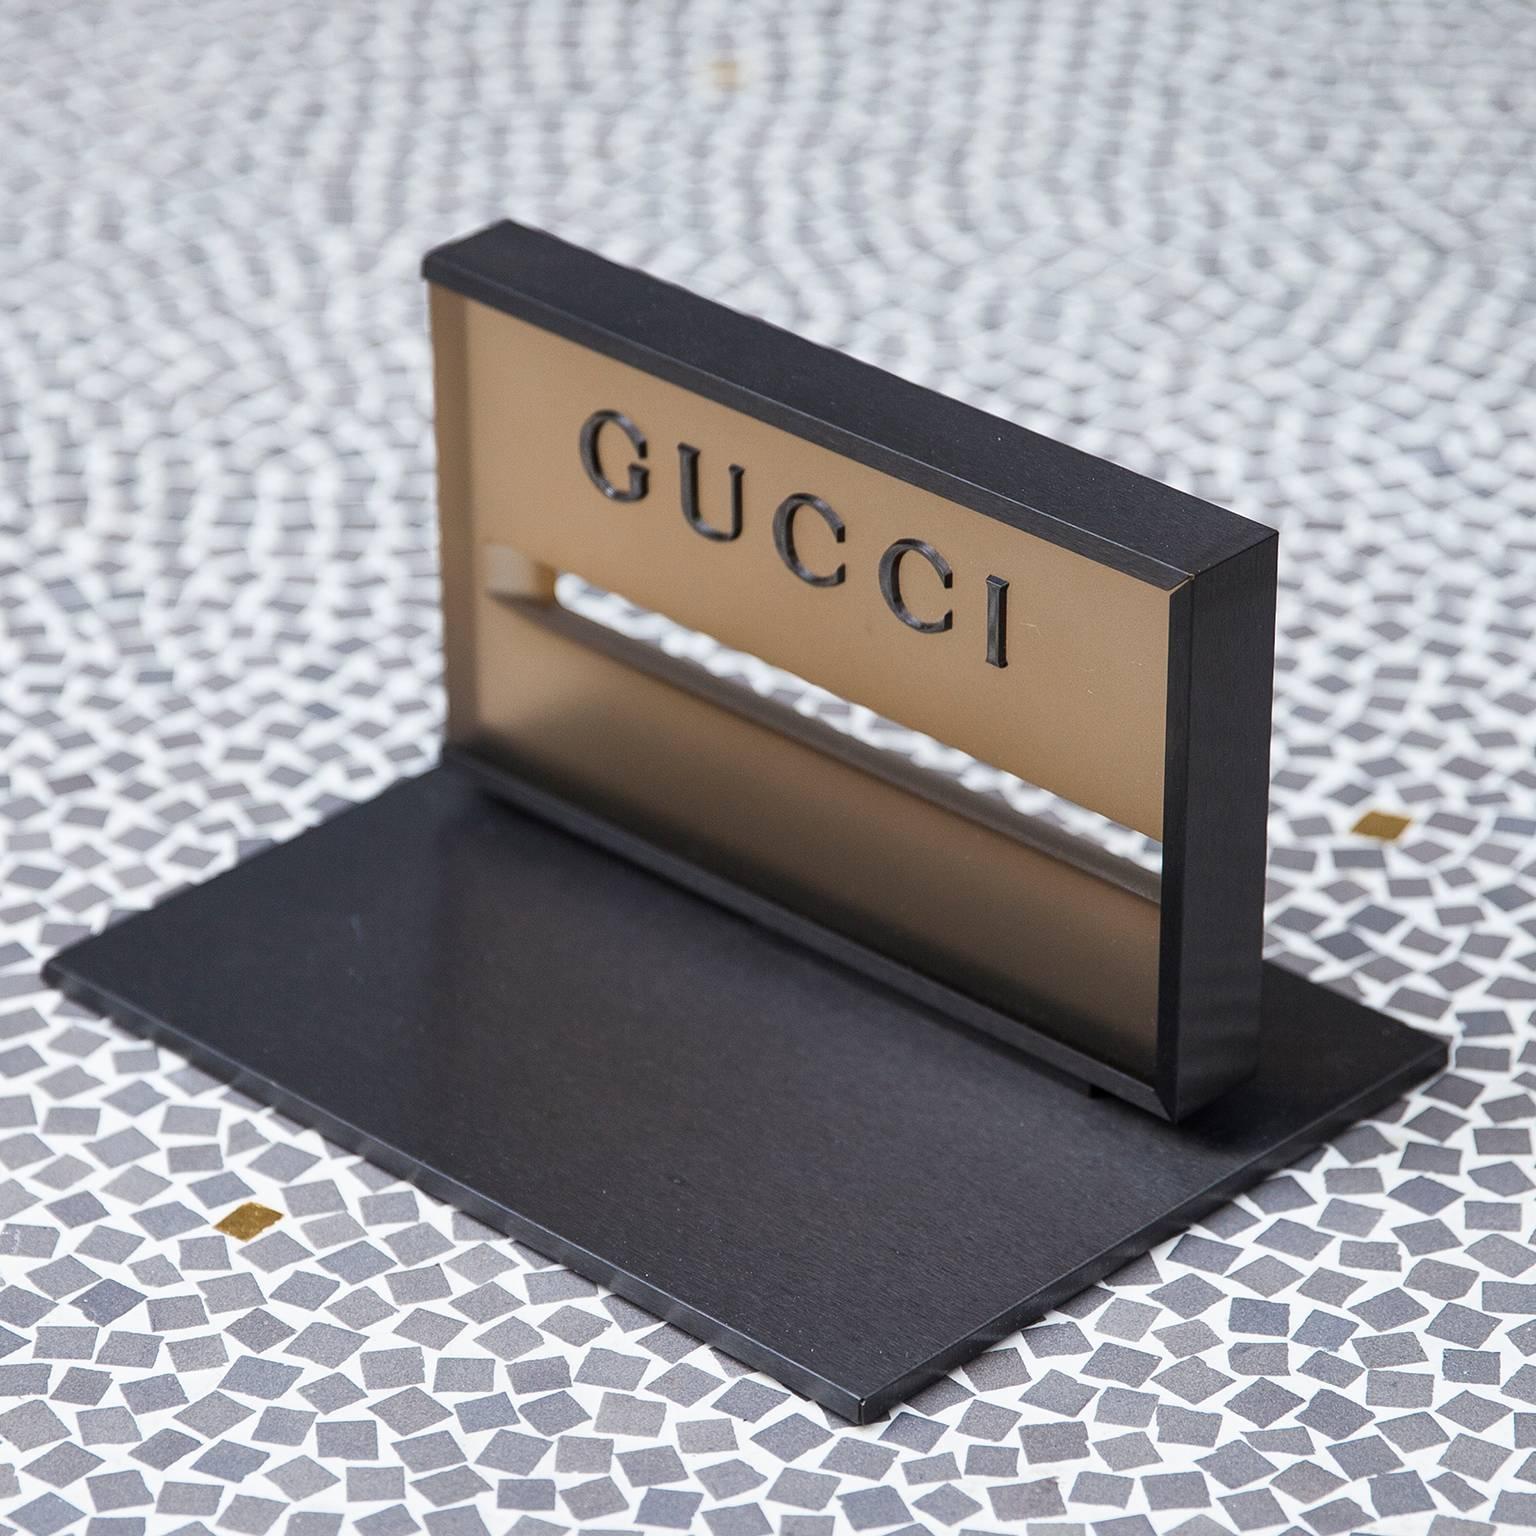 Dieser elegante Gucci-Briefbeschwerer aus den 1980er Jahren besteht aus einem anthrazitfarbenen Metallsockel und einem Acrylständer und wird Tom Ford zugeschrieben.